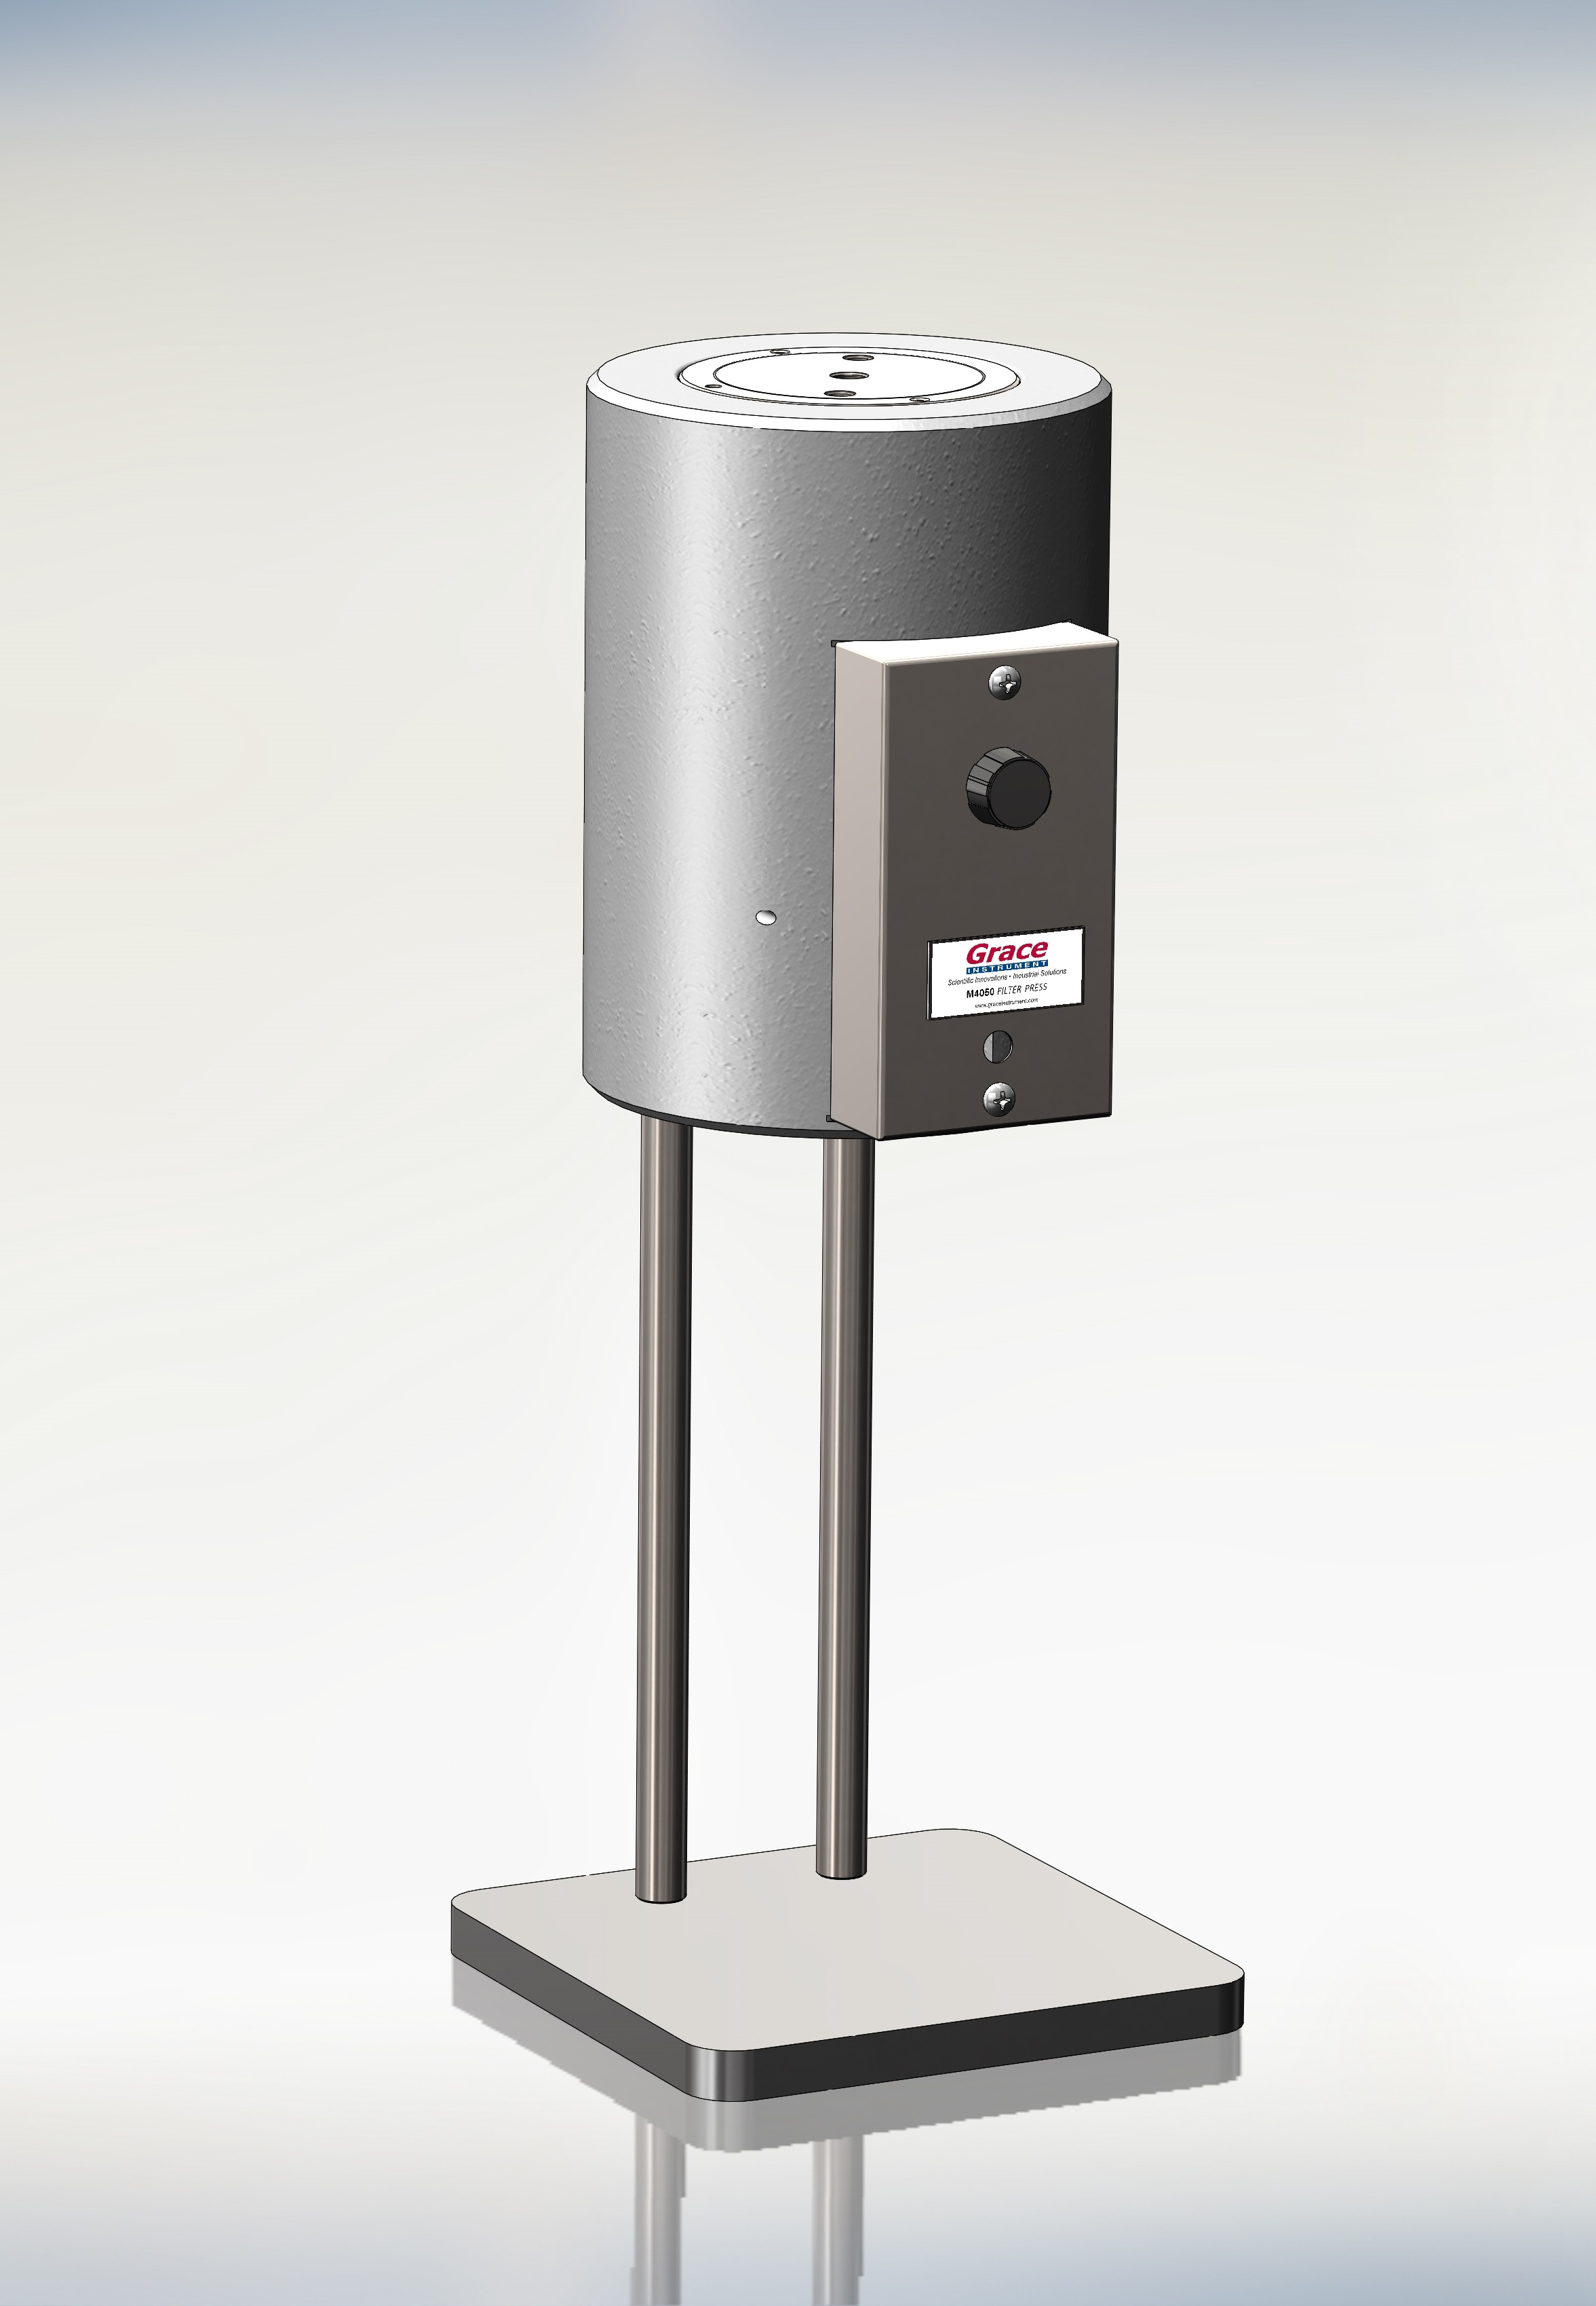 Grace M4050 HPHT Filter Press 高温高压压滤仪